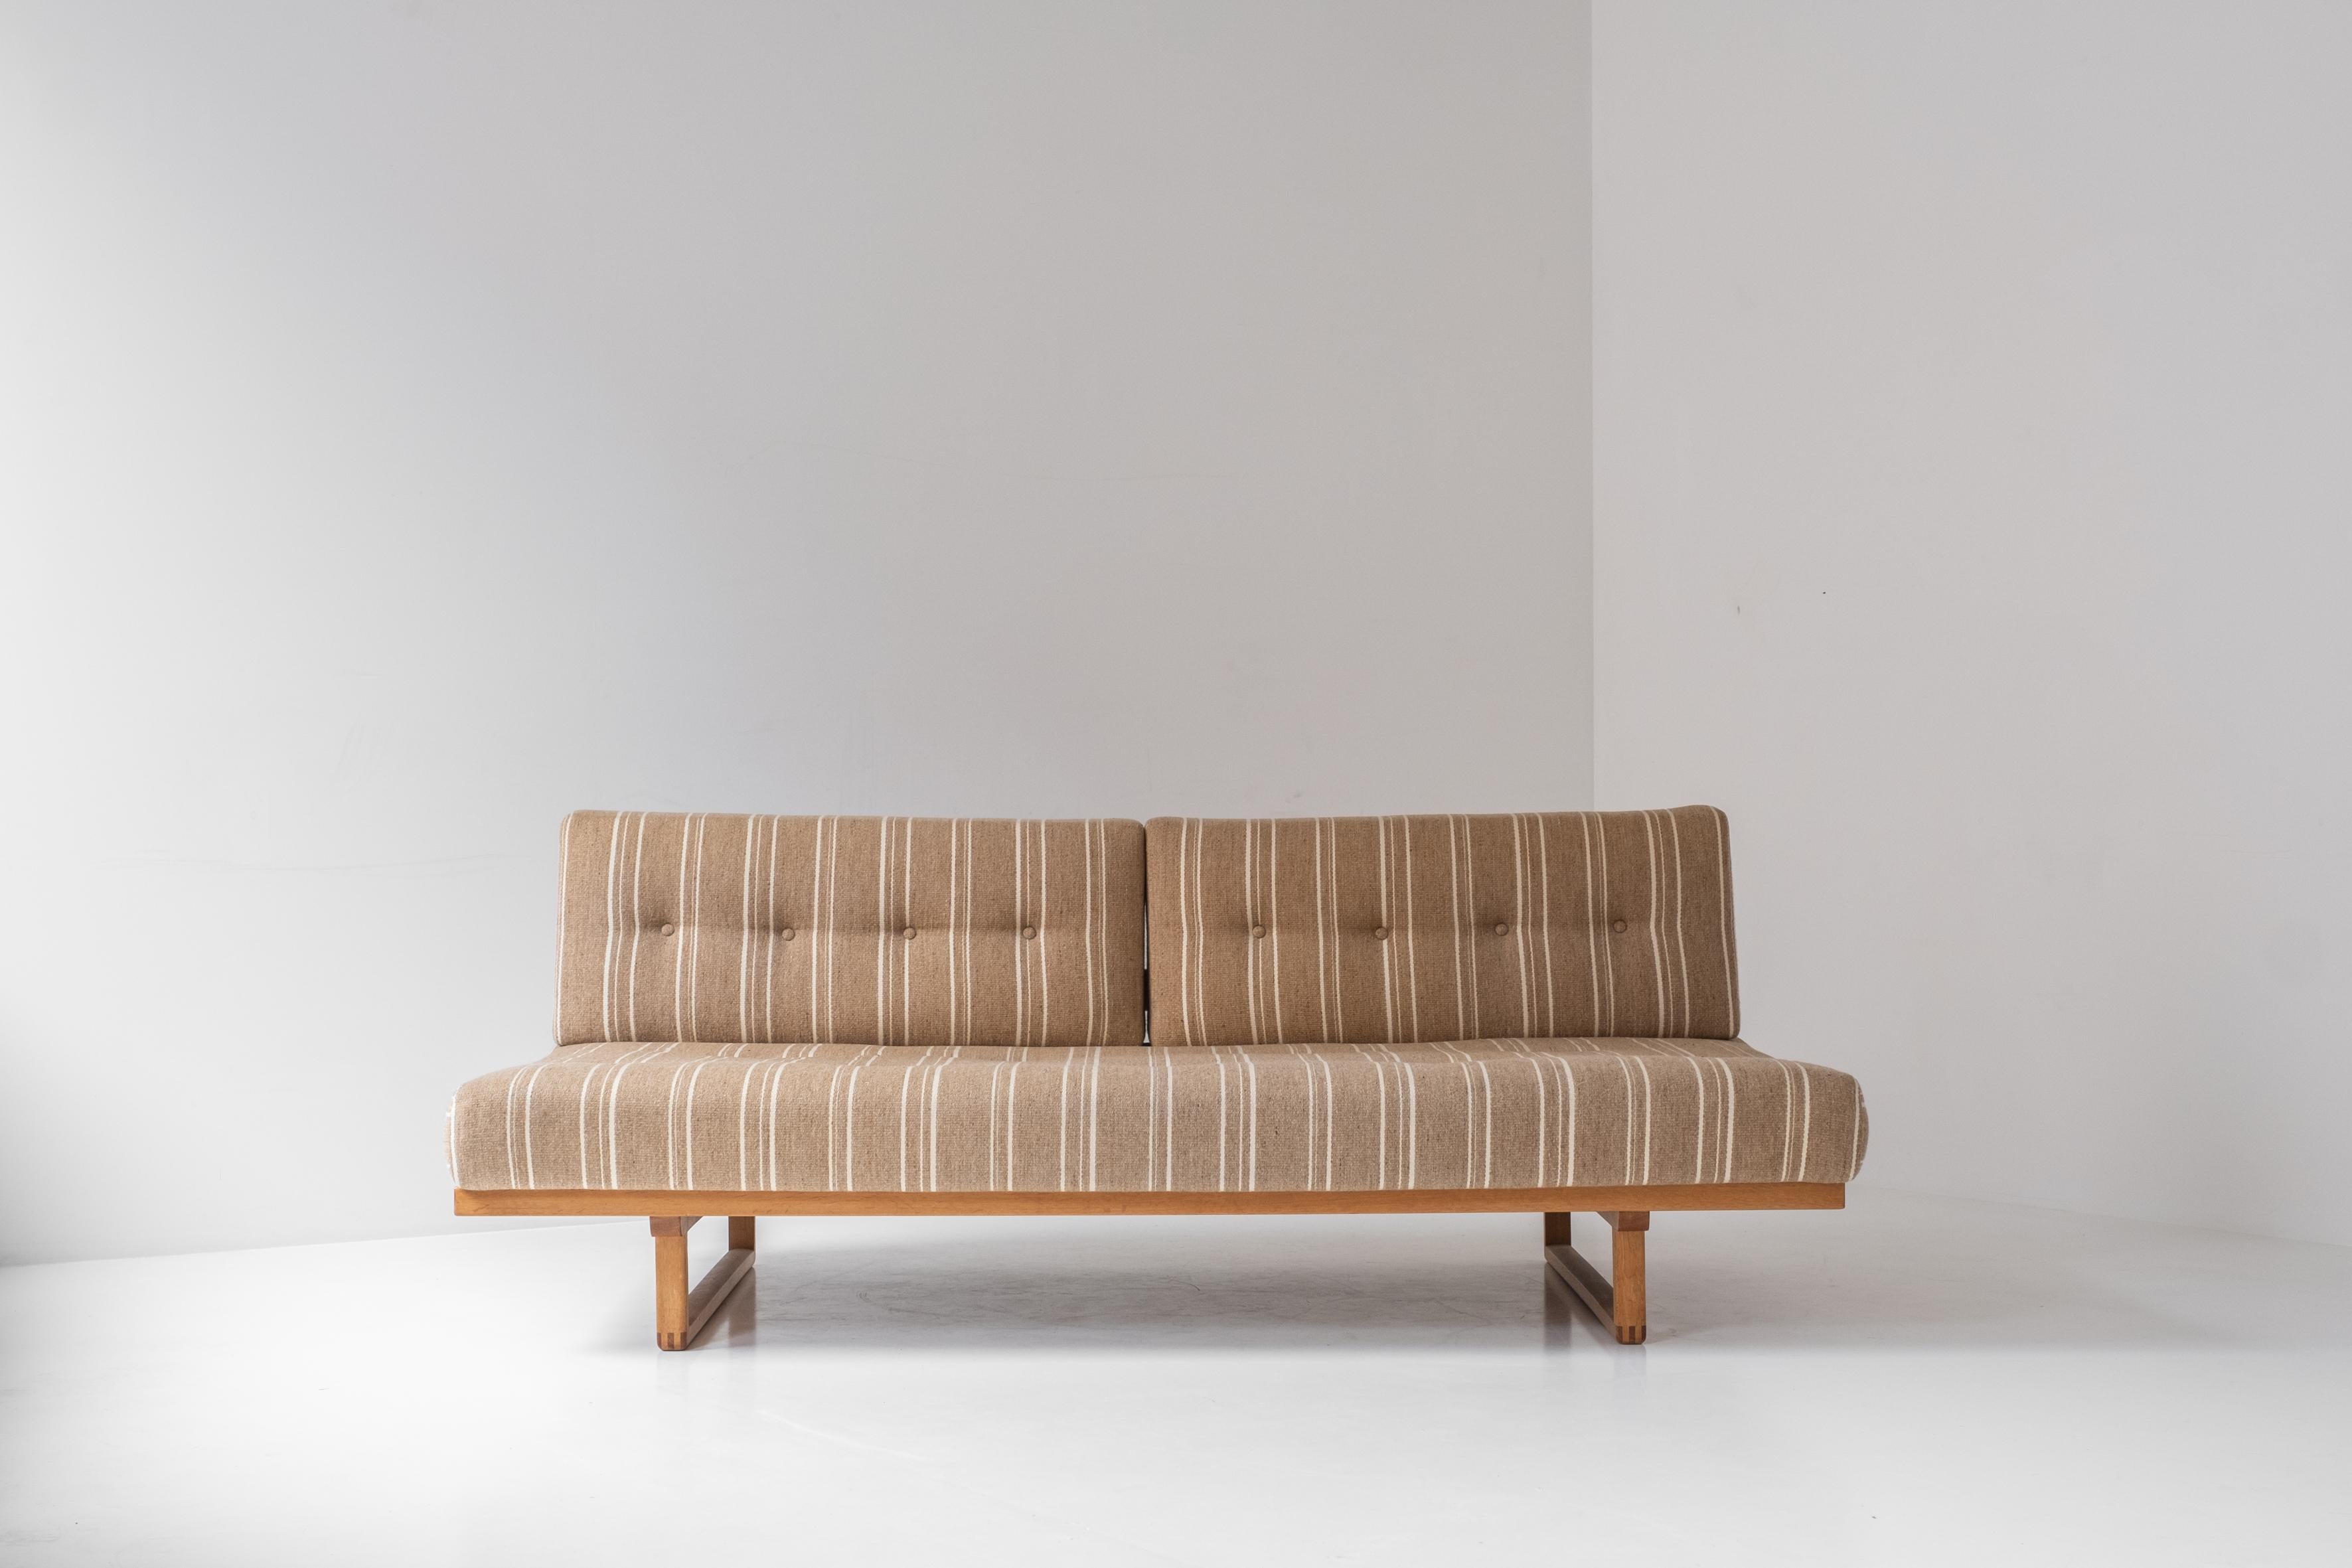 Seltenes Sofa oder Tagesbett 'Model No 4311' entworfen von Børge Mogensen für Fredericia Stolefabrik, Dänemark 1950er Jahre. Das Sofa verfügt über ein Gestell aus Eichenholz und bleibt die ursprüngliche Polsterung, in einem sehr guten und